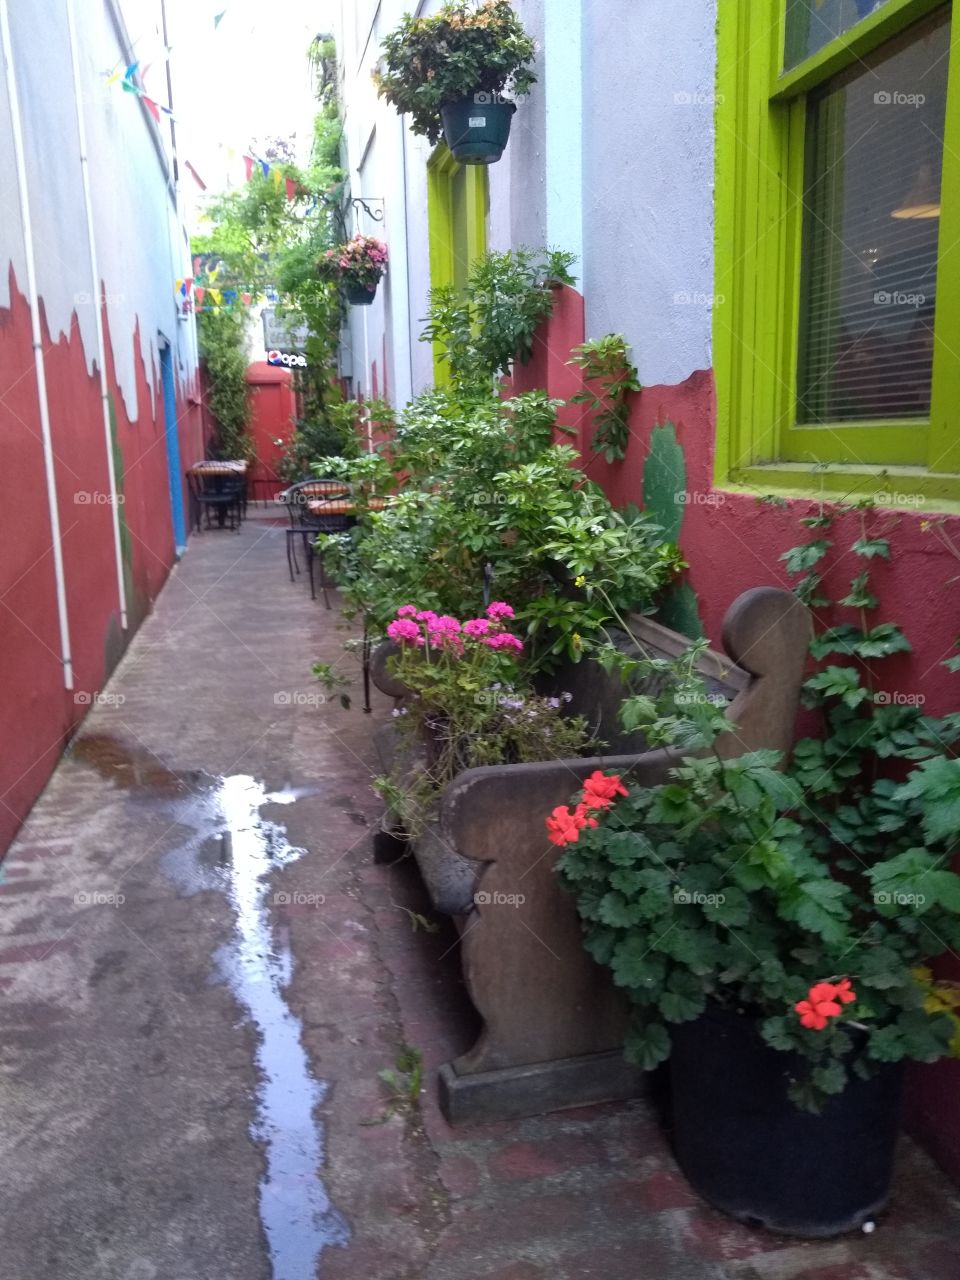 floral bench mini garden in alley